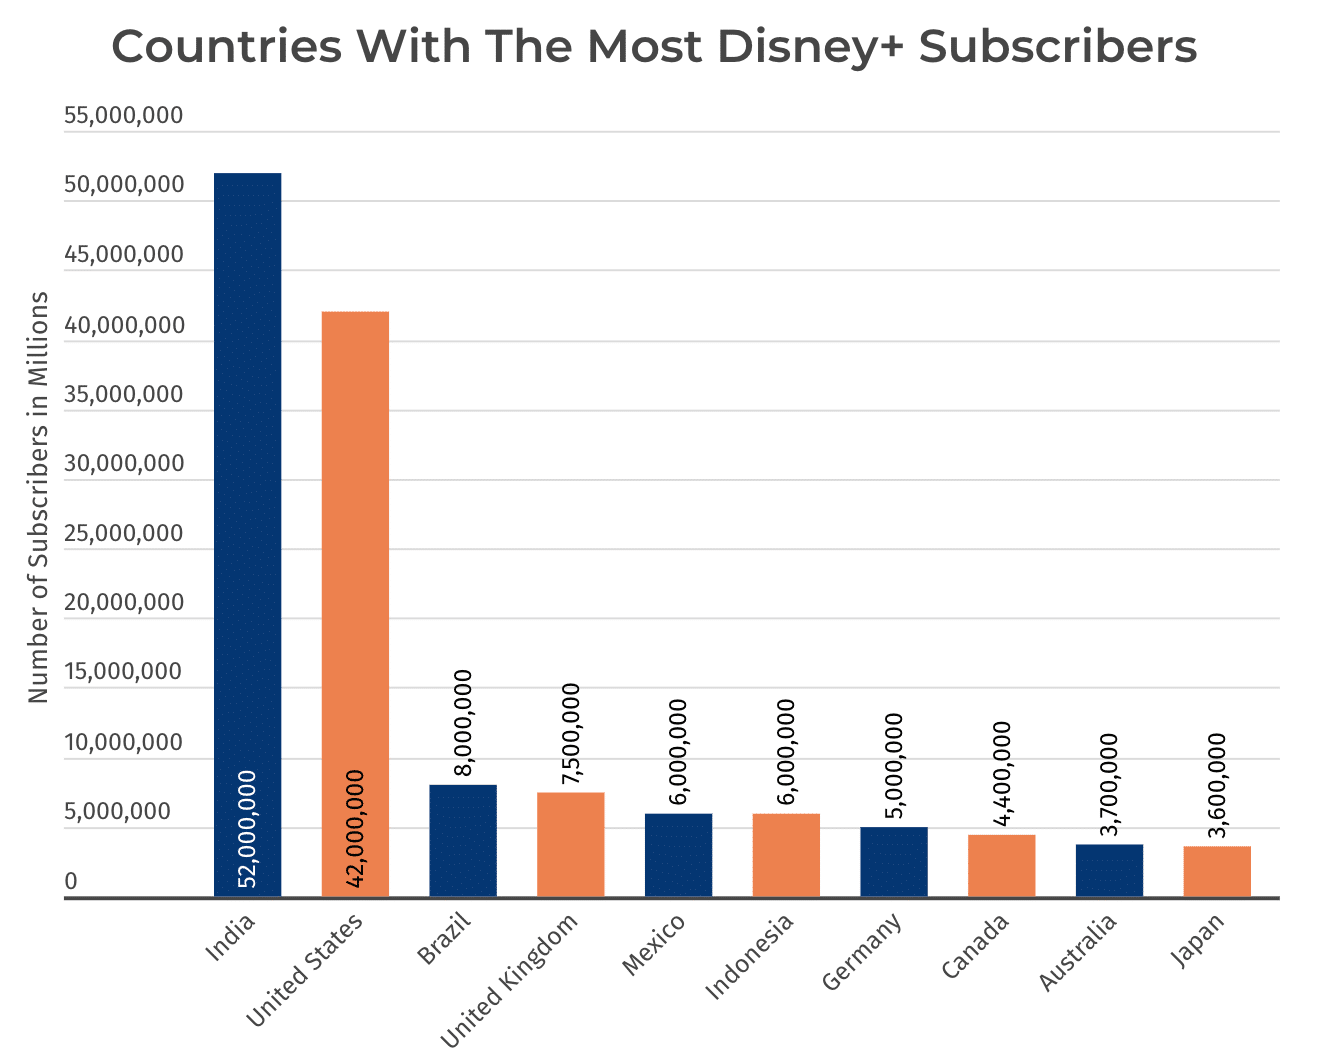 อินเดียมีสมาชิก Disney+ มากที่สุดในโลก